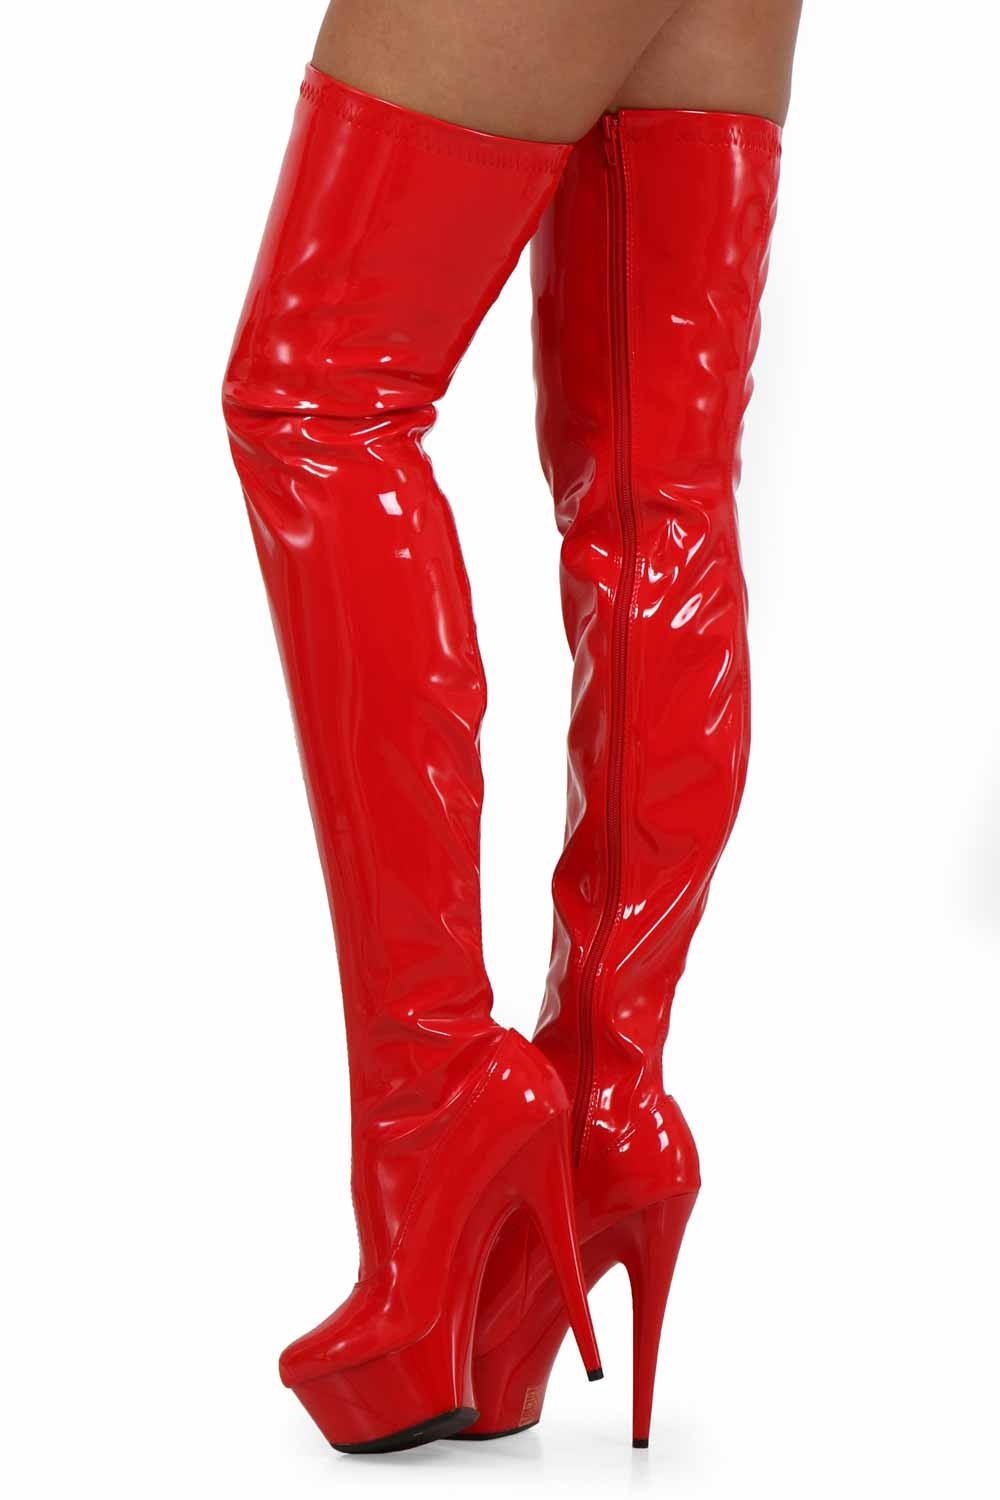 Stivali rossi in vinile con cerniera laterale | Lingerie torino